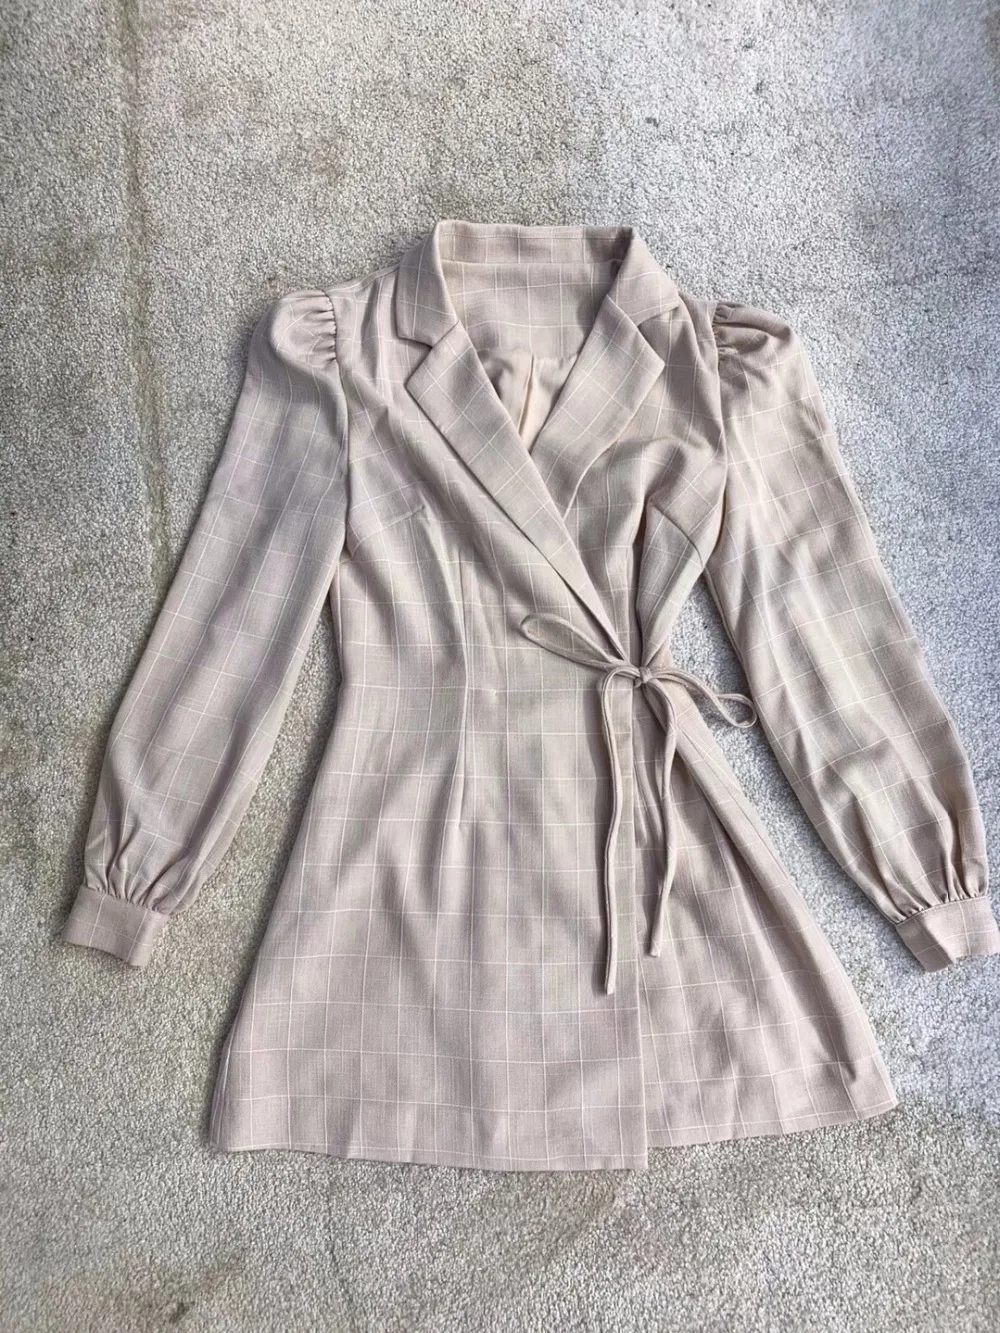 Осень французский темперамент v-образным вырезом шнуровкой обертывание платье офисный костюм пальто